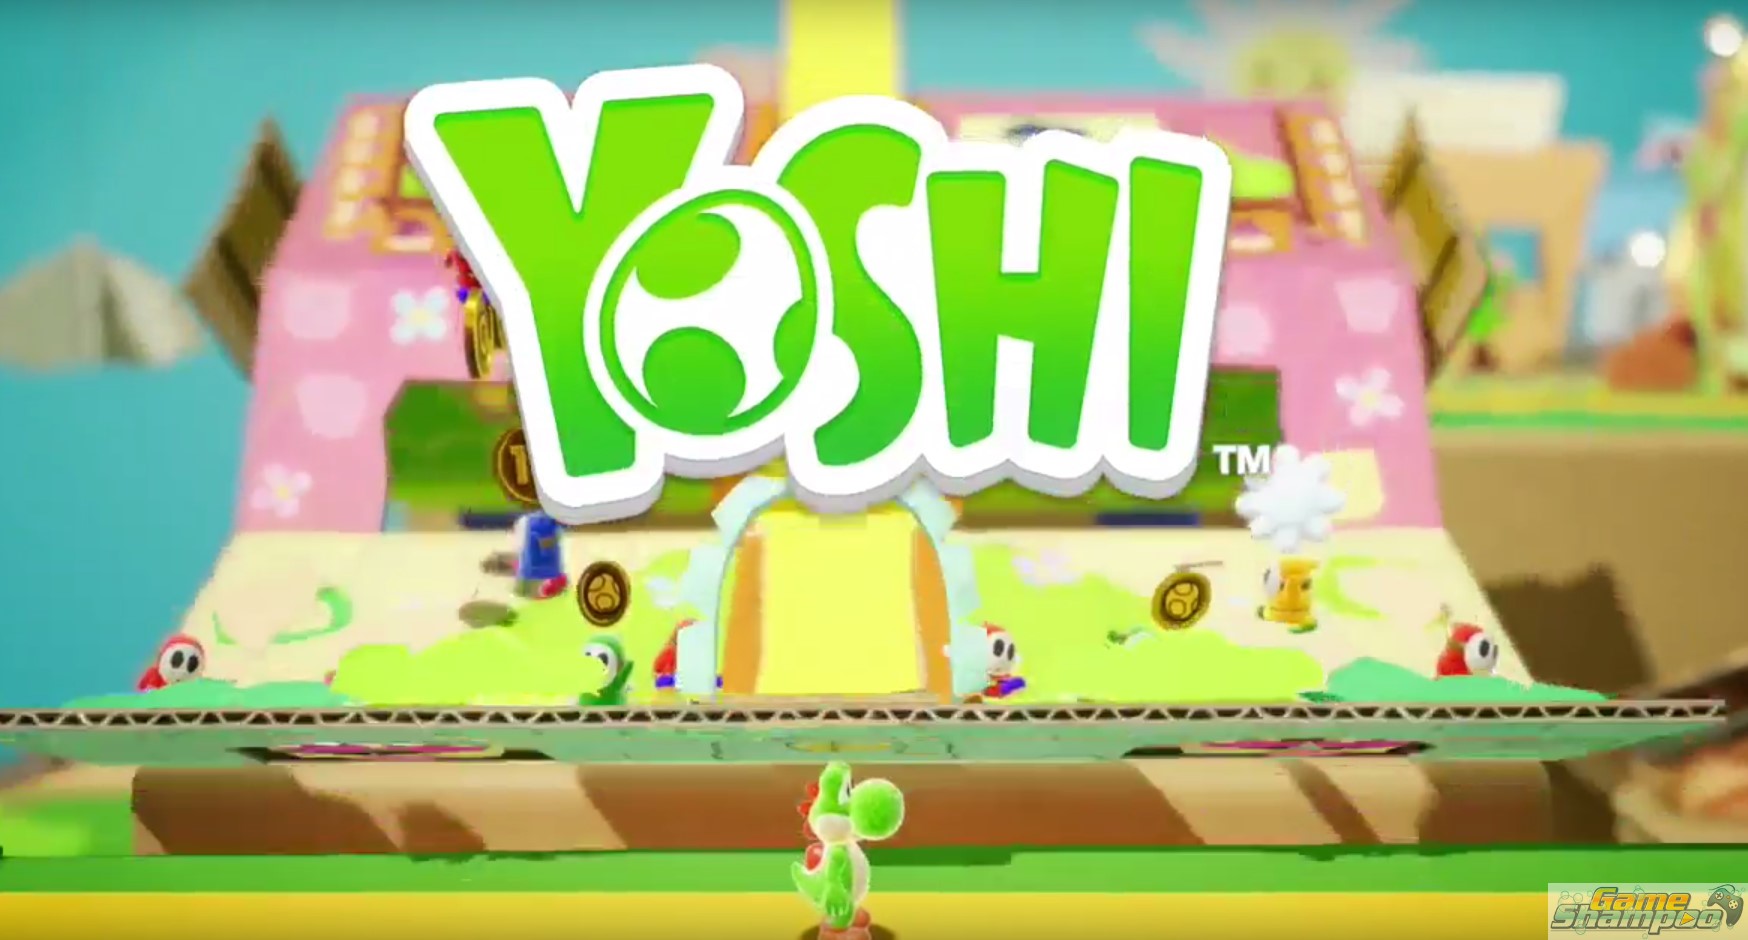 Nintendo E3 2017 Yoshi